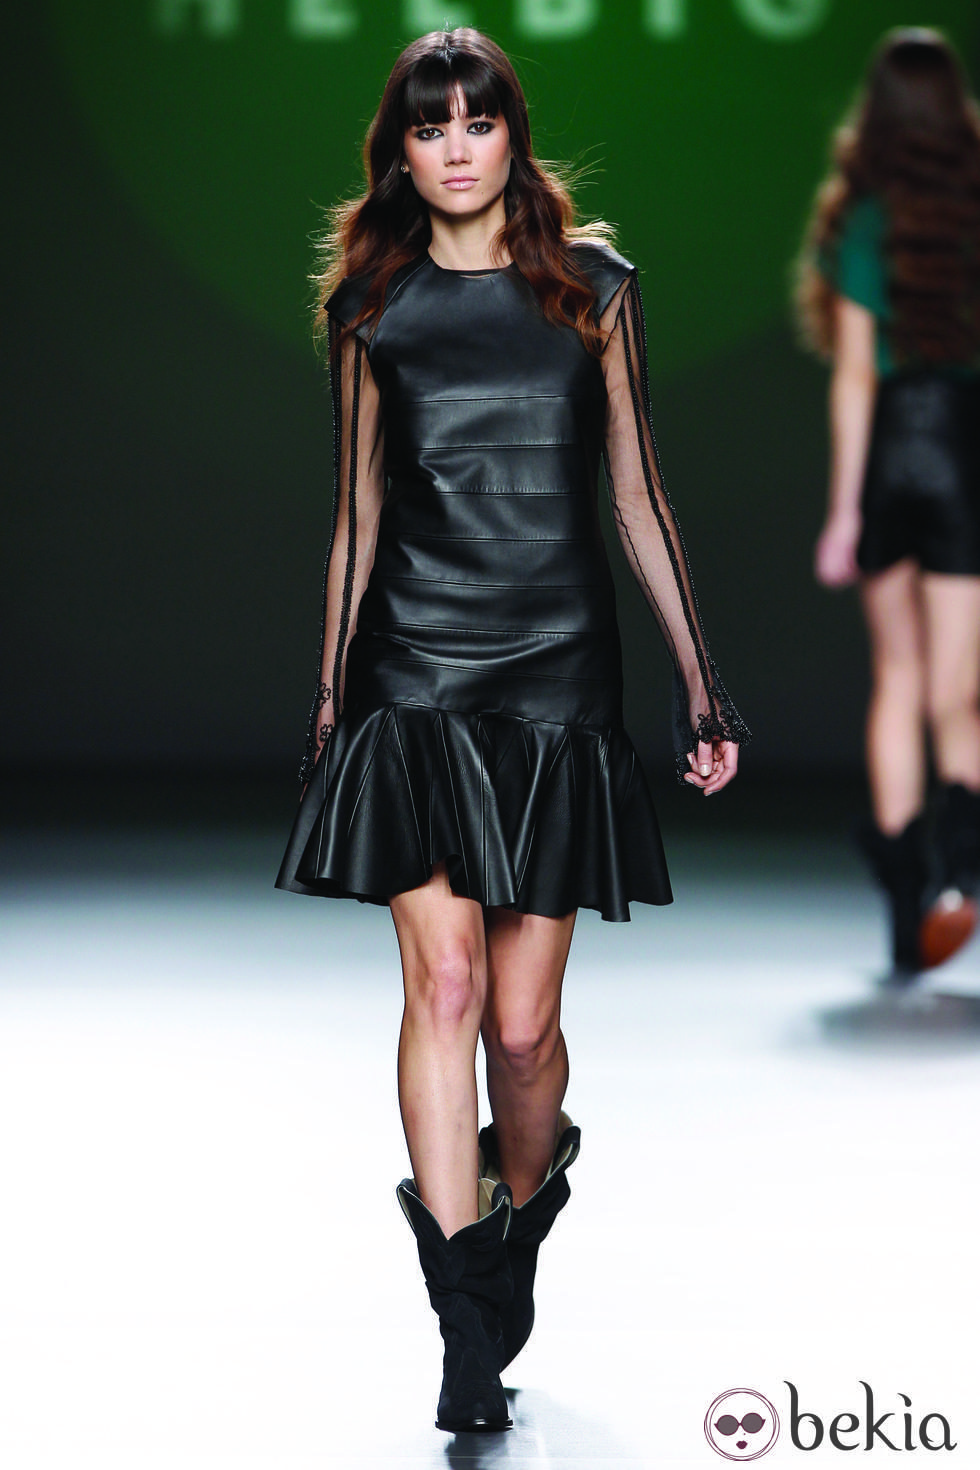 Vestido de cuero negro tableado de la colección otoño/invierno 2012/2013 de Teresa Helbig